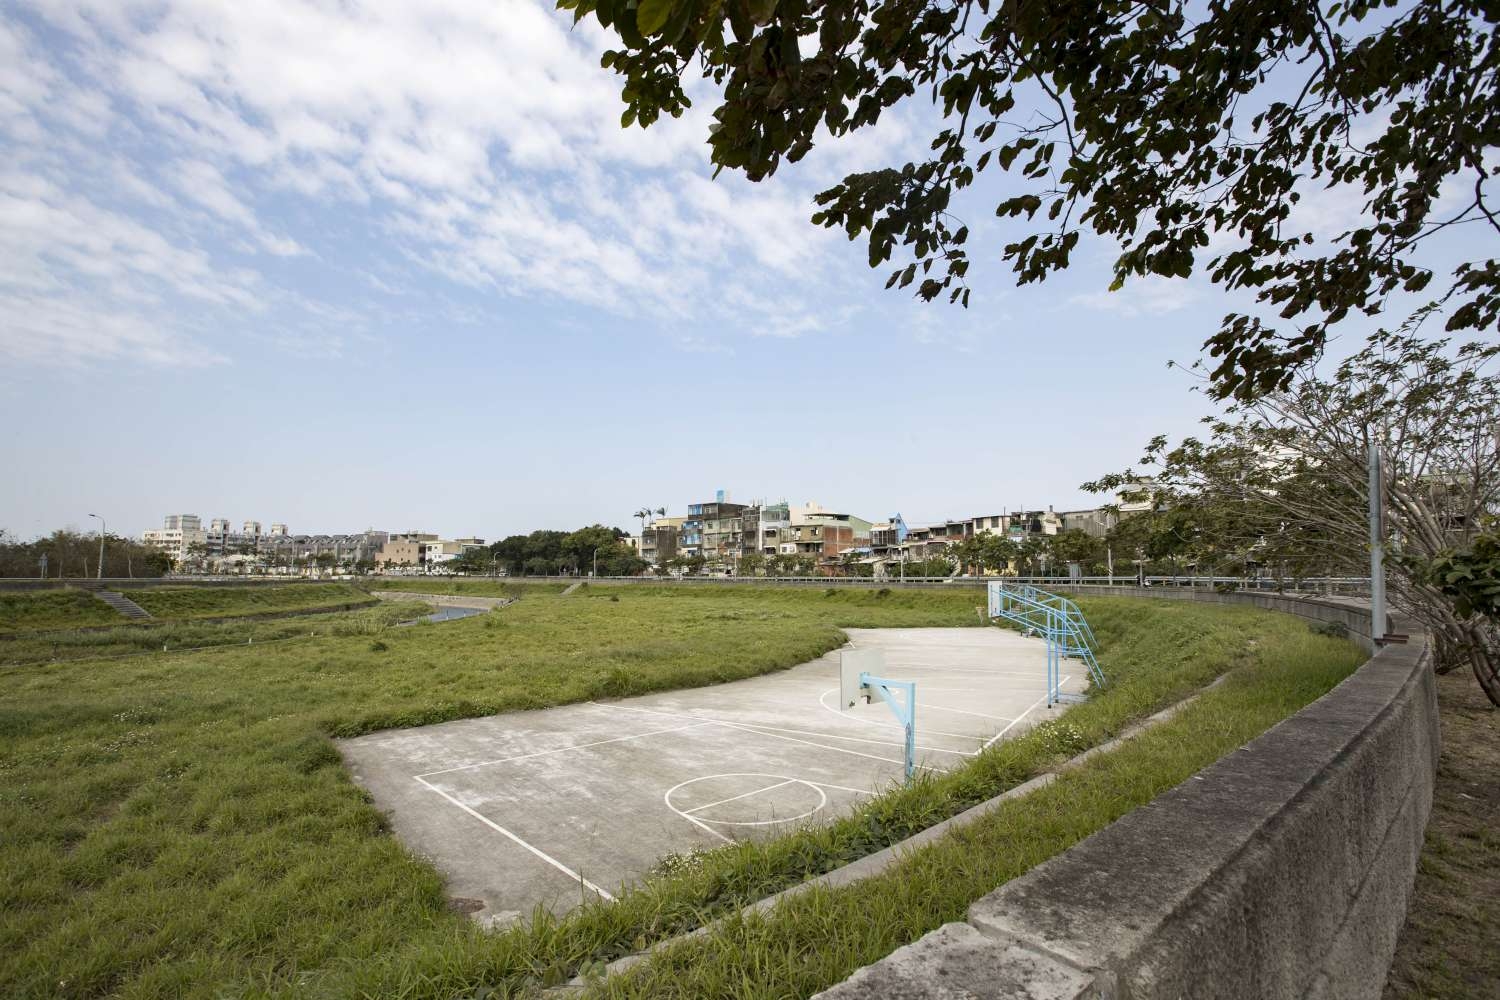 堤岸左側空間即為「竹香北路人行步道」預定建置處